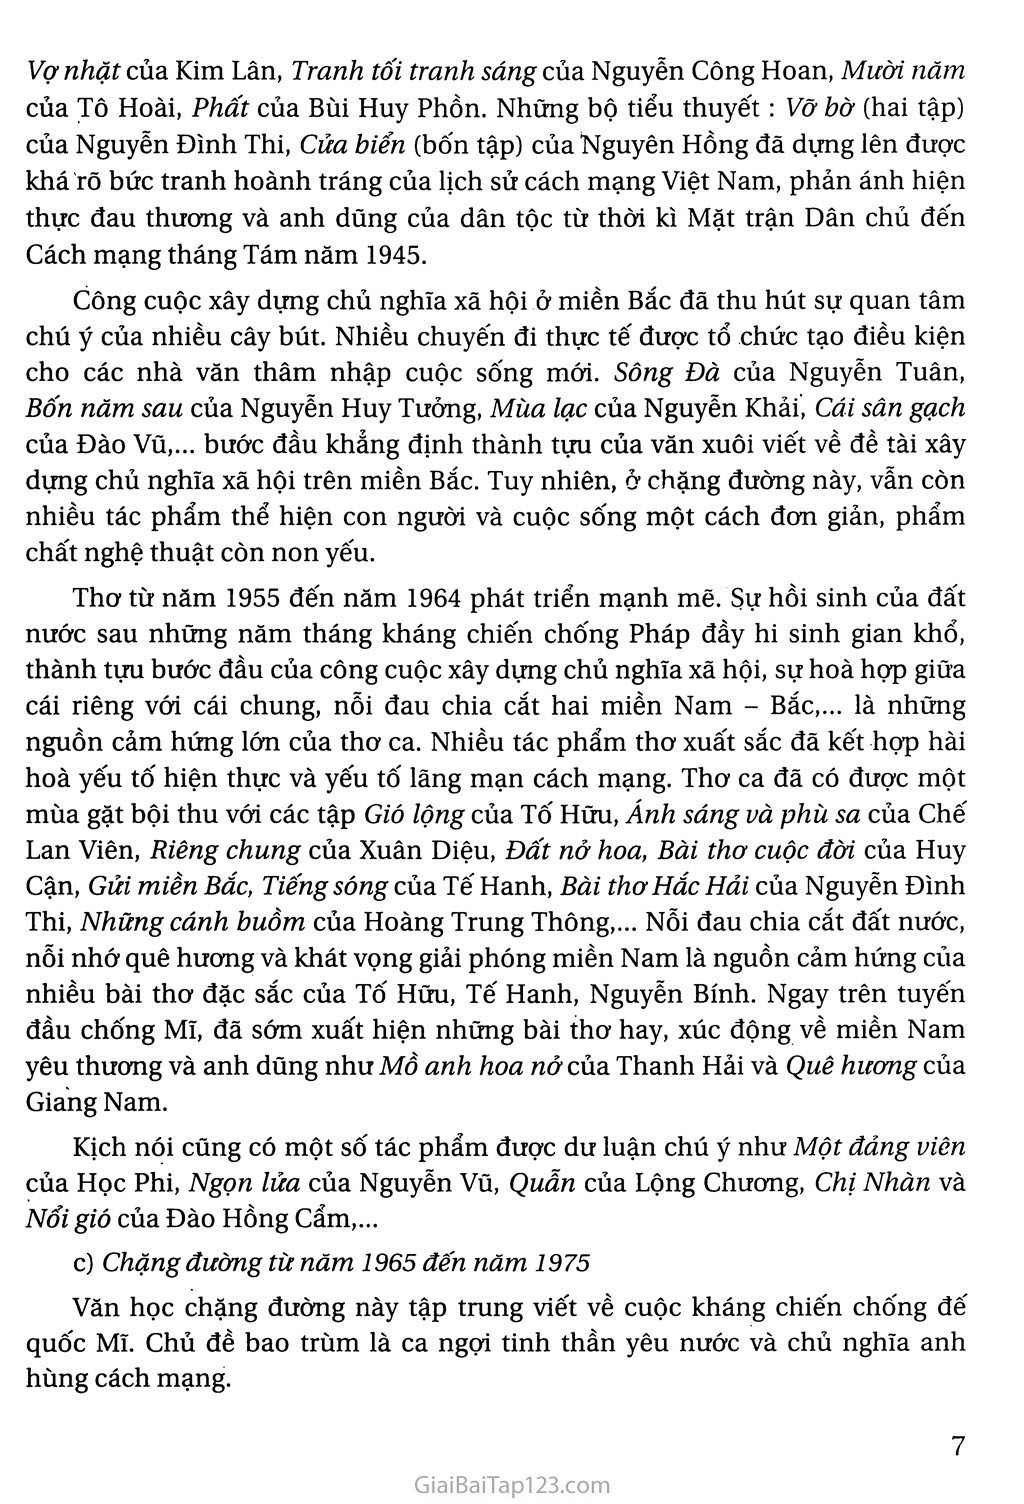 Khái quát văn học Việt Nam từ cách mạng tháng tám năm 1945 đến hết thế kỉ XX trang 5